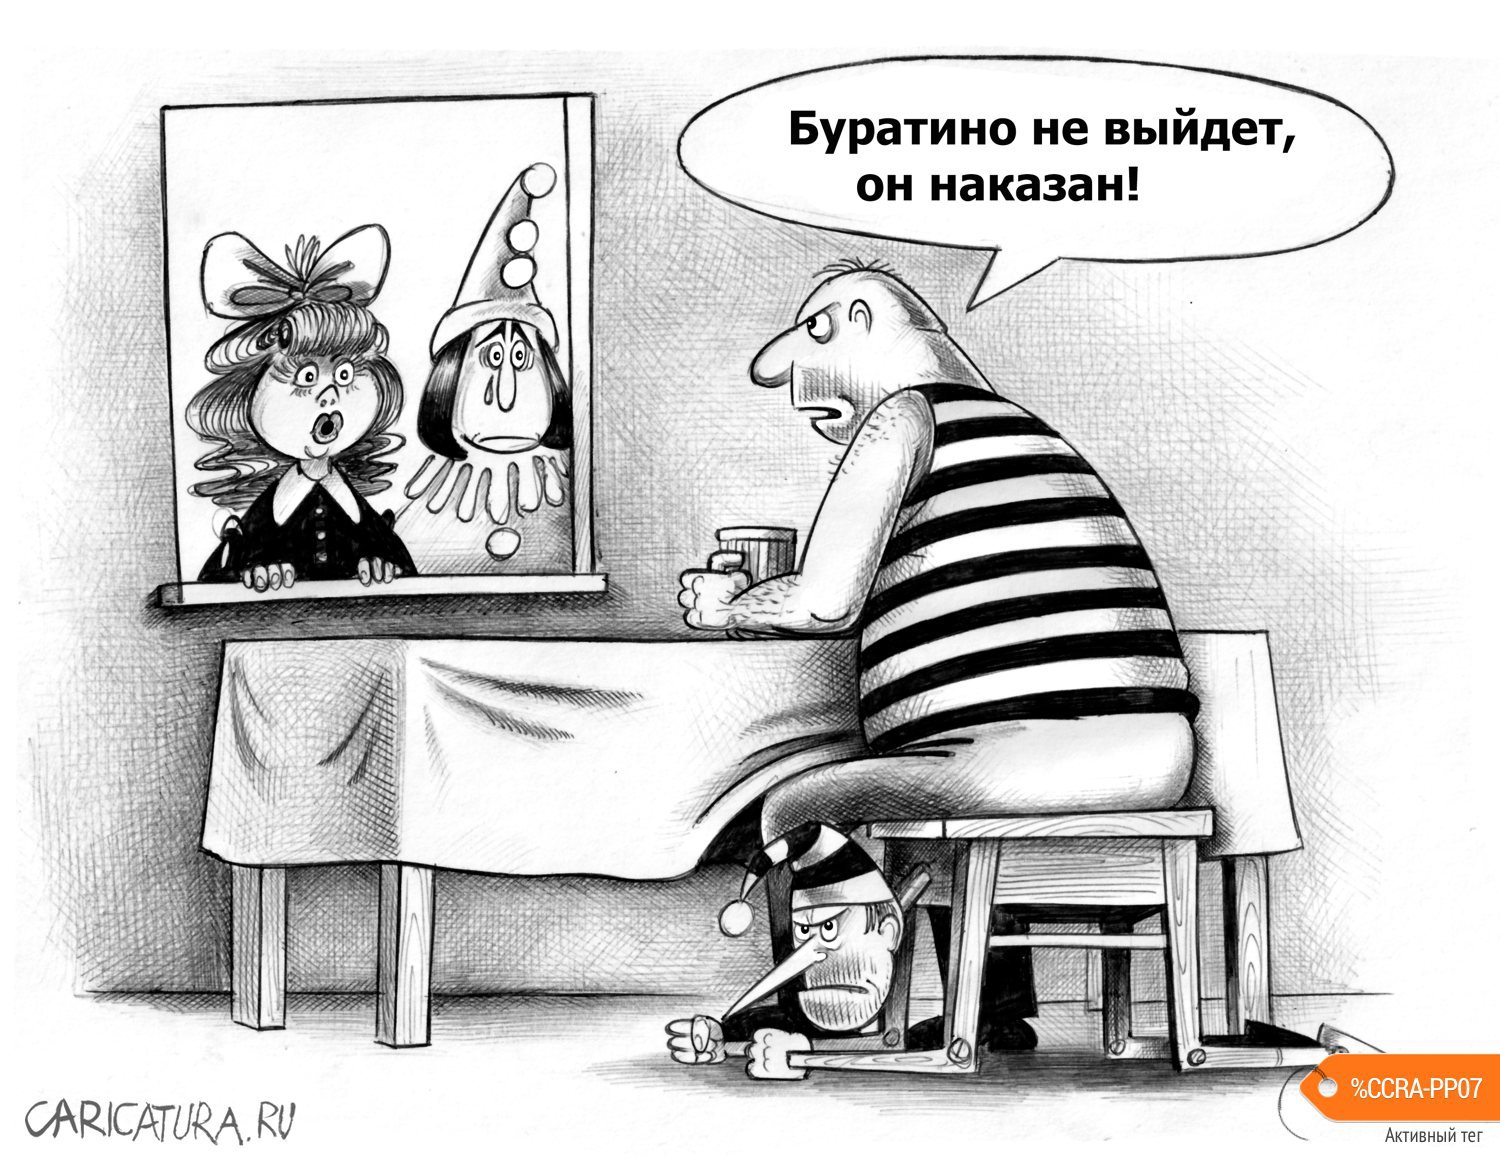 Карикатура "Наказание", Сергей Корсун